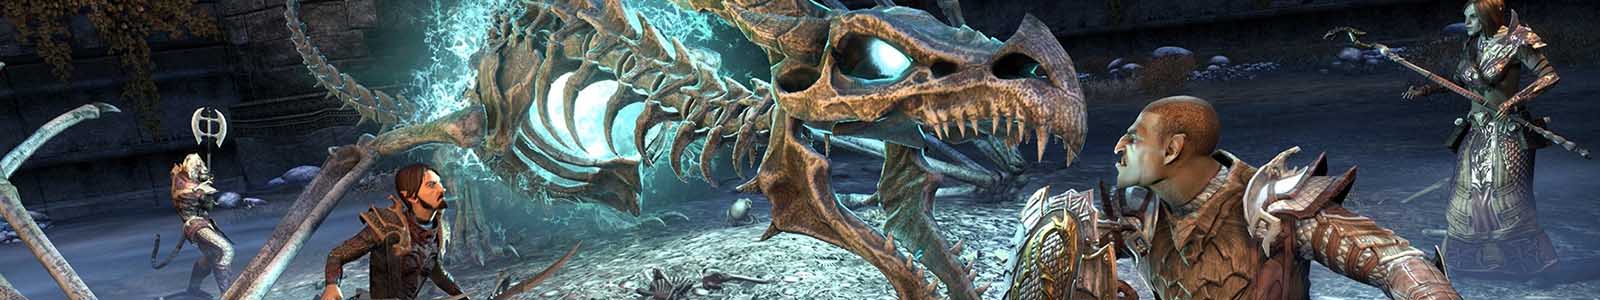 ESO Dragon Bones DLC header